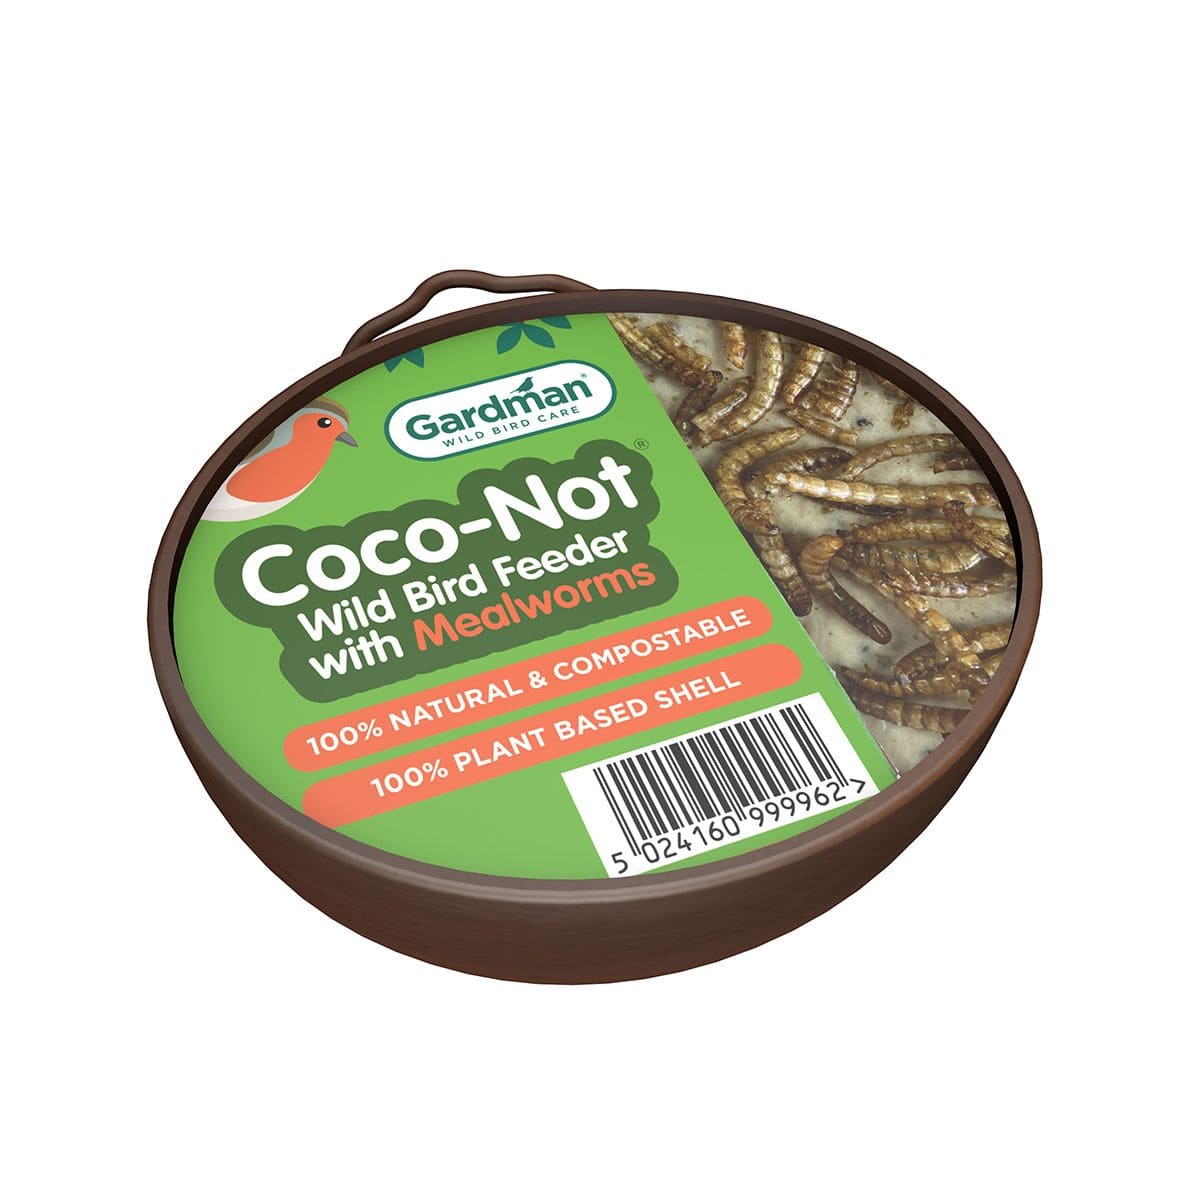 Gardman Suet Coconut Shells Gardman Coco-Not Mealworm